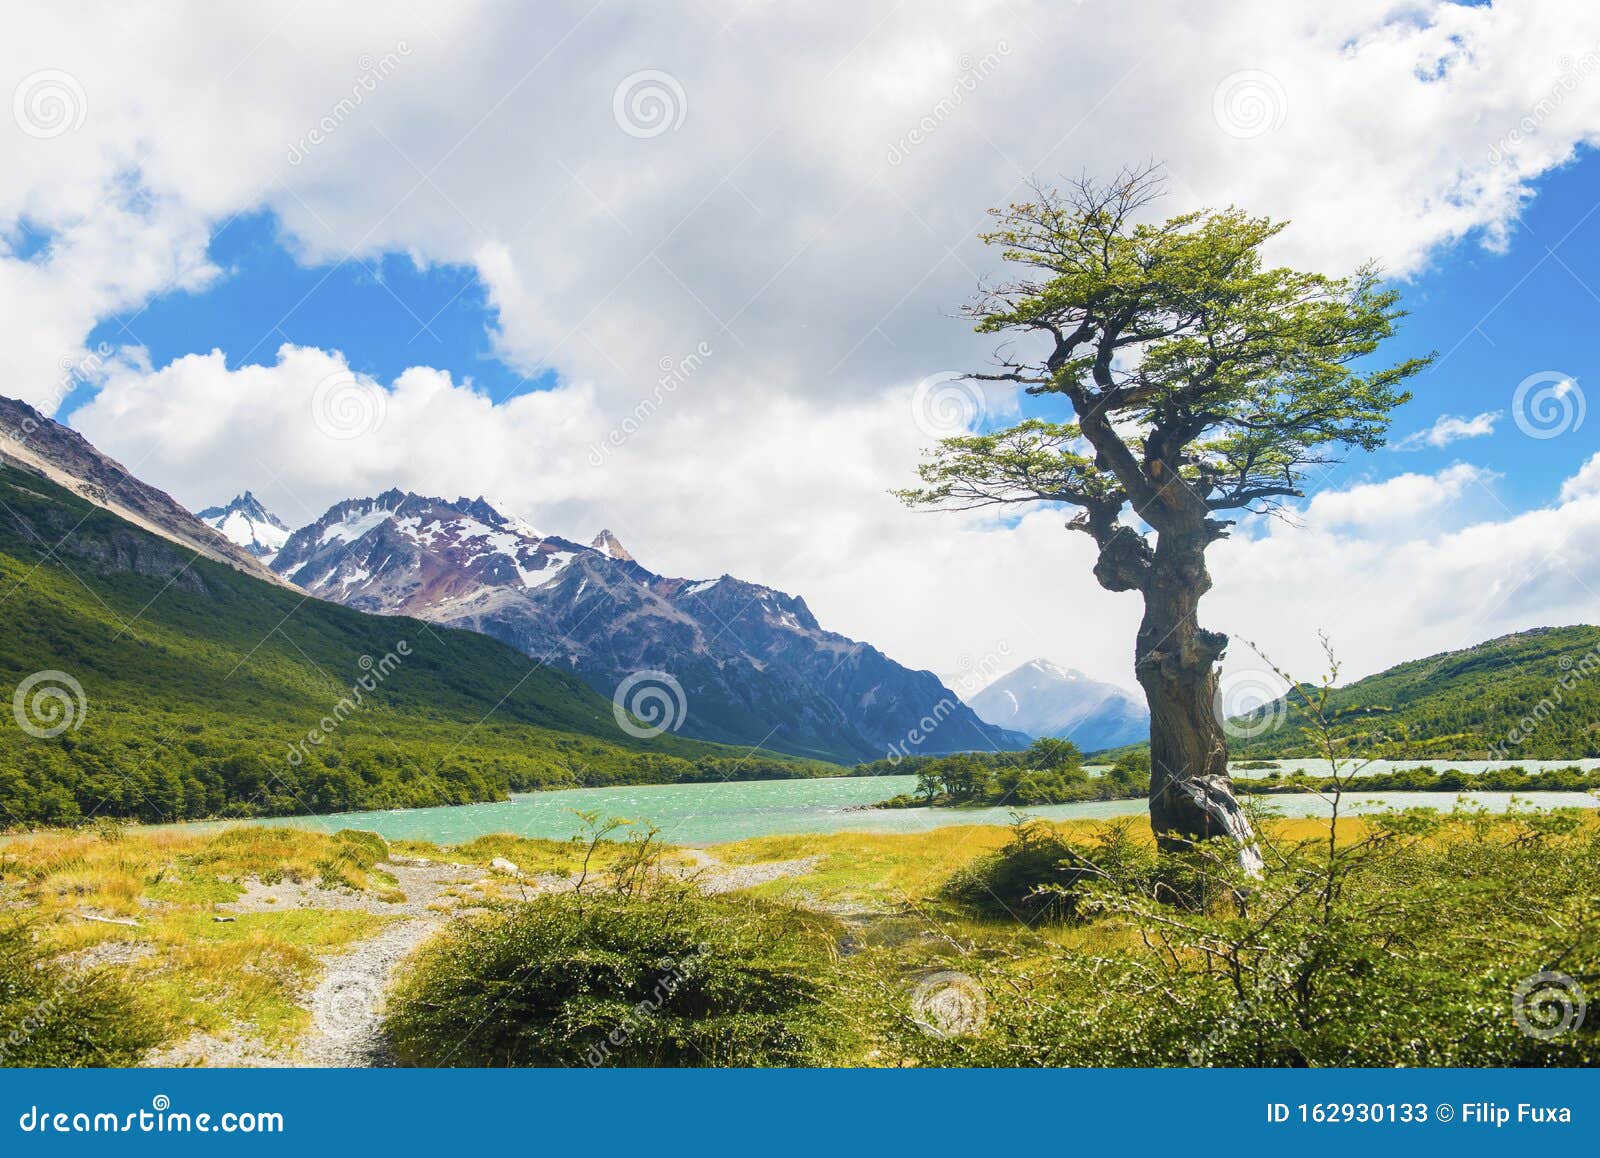 laguna nieta lake in los glaciares national park in argentina